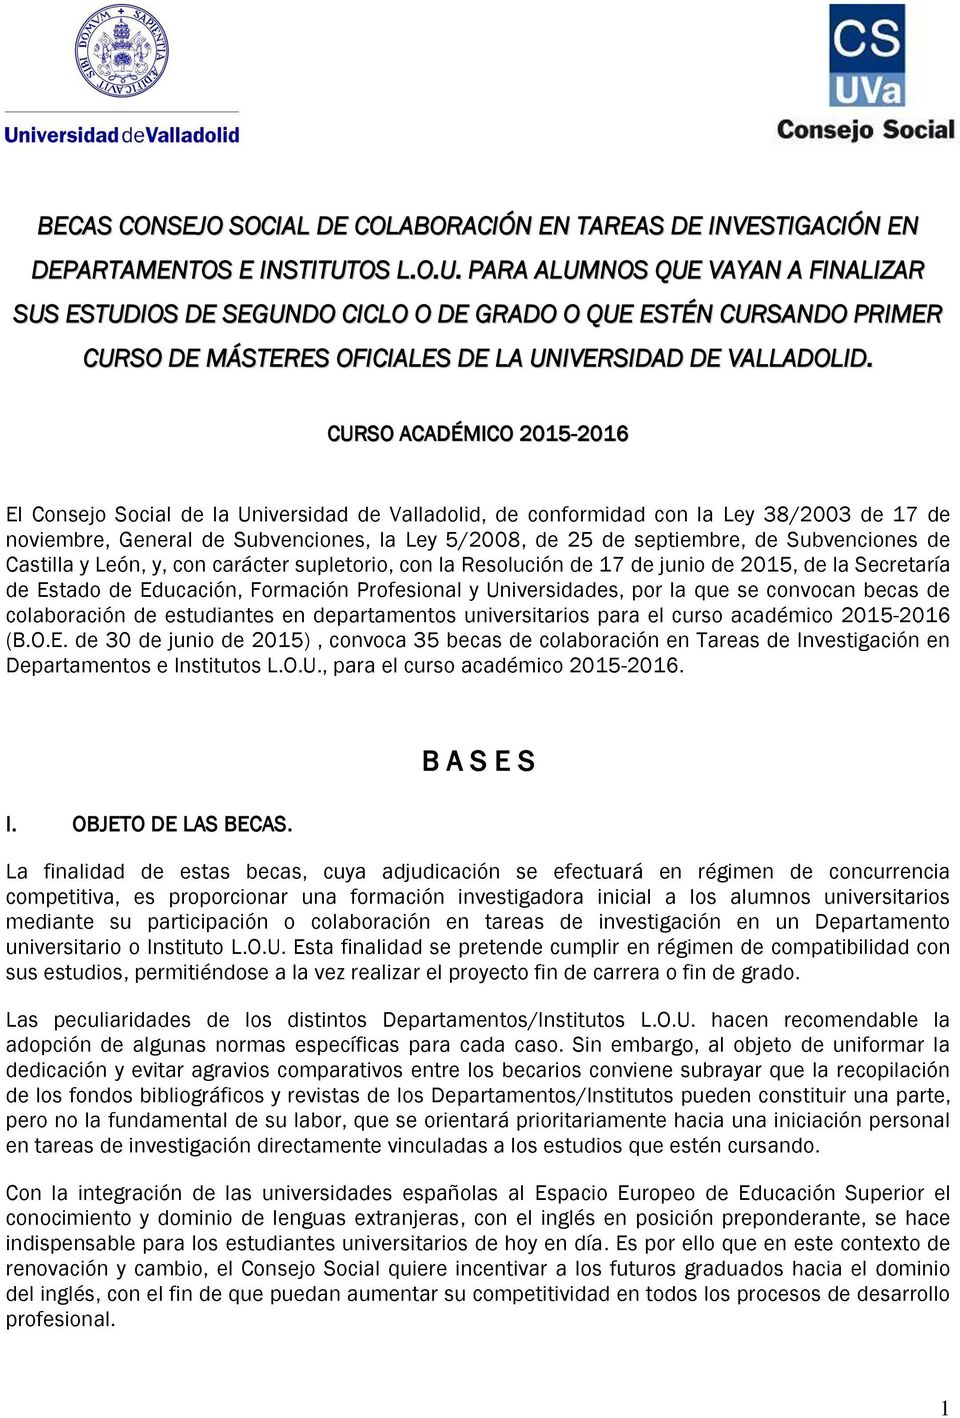 CURSO ACADÉMICO 2015-2016 El Consejo Social de la Universidad de Valladolid, de conformidad con la Ley 38/2003 de 17 de noviembre, General de Subvenciones, la Ley 5/2008, de 25 de septiembre, de